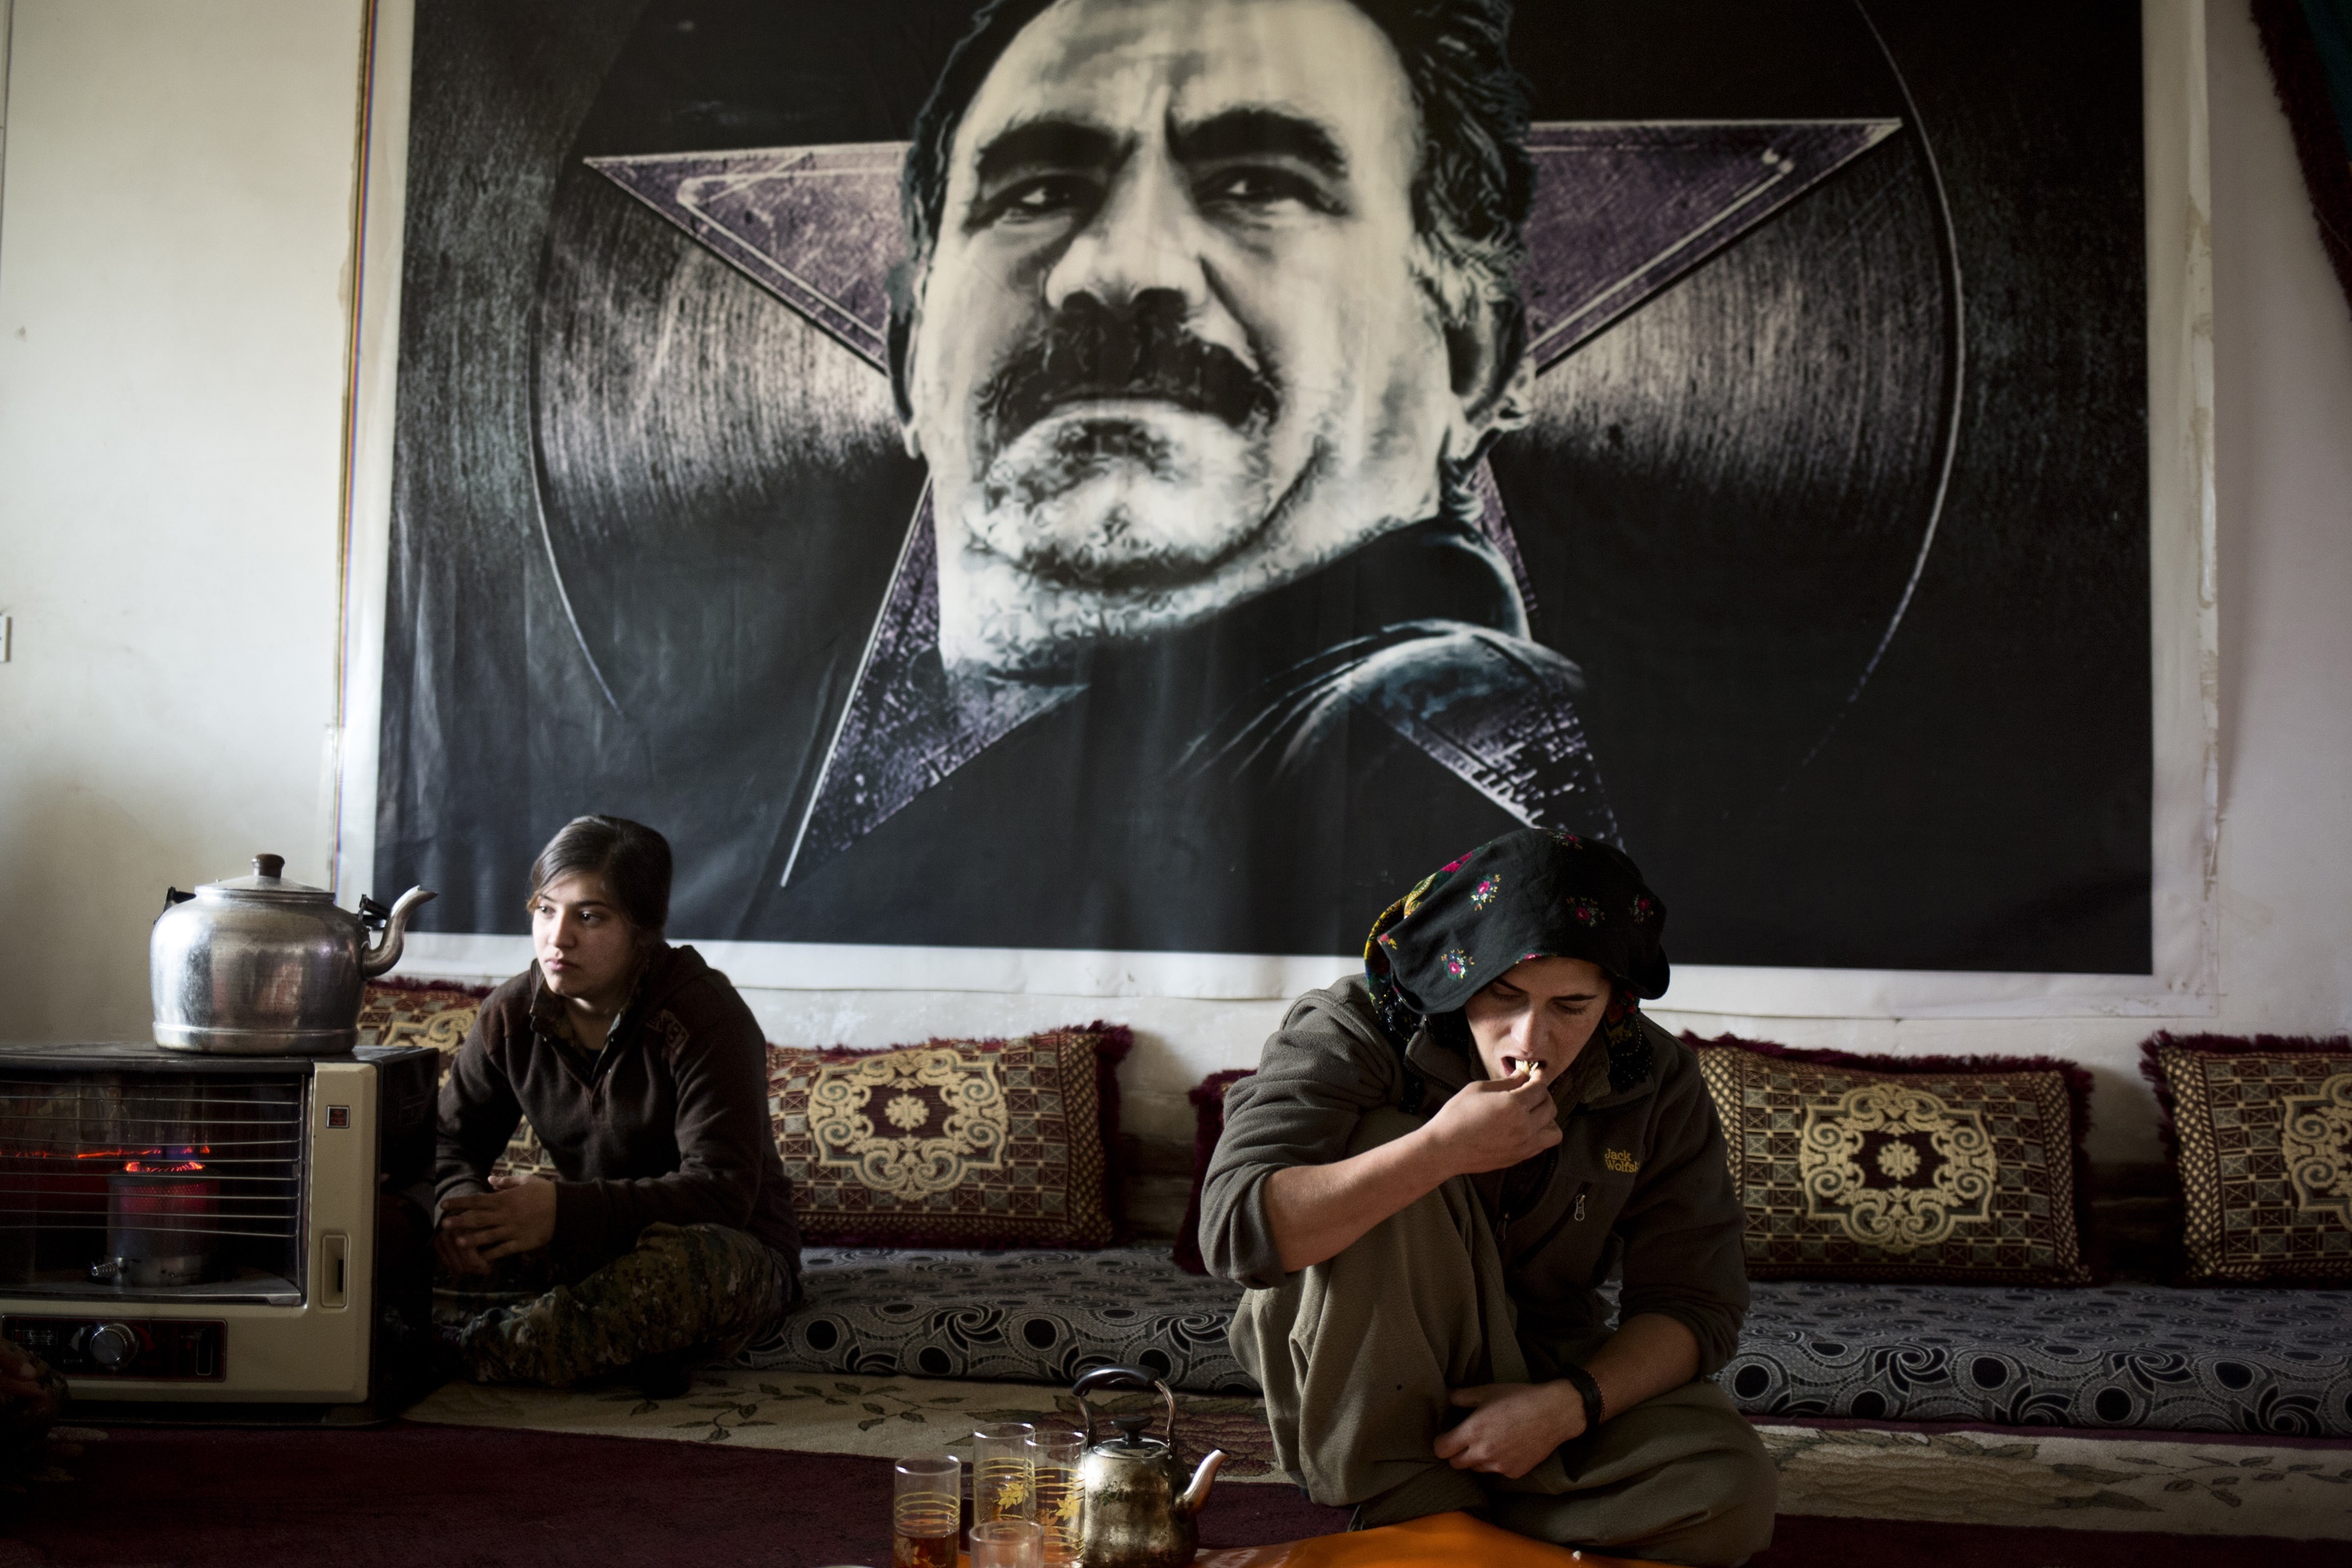 SINJAR, KURDISTAN, IRAQ- FEBRUARY, 2016: Les combattantes du YBS dont font parti beaucoup de Yezidies attendent de prendre les villages autour de la ville de Sinjar toujours aux mains de Daech. Au mur, le fondateur du mouvement revolutionnaire kurde le PKK, Abdullah Ochalan. (picture by Veronique de Viguerie/ Reportage by Getty Images ) 
Abdullah Ãcalan, connu sous le nom d'Apo, nÃ© le 4 avril 1949 dans le village de Ãmerli (Amara en kurde), rattachÃ© Ã  la ville de Halfeti Ã  Urfa, est lâun des fondateurs et le dirigeant du Parti des travailleurs du Kurdistan (PKK, Partiya KarkÃªren Kurdistan), organisation considÃ©rÃ©e comme terroriste par la Turquie, les Ãtats-Unis et l'Union europÃ©enne entre autres.
AprÃ¨s avoir Ã©tÃ© capturÃ© au Kenya au cours d'une opÃ©ration menÃ©e conjointement par les services secrets turcs, amÃ©ricains1 et israÃ©liens le 15 fÃ©vrier 1999, il est jugÃ© le 28 avril 1999 pour trahison Ã  la nation (d'aprÃ¨s la loi 125 du code pÃ©nal turc) et condamnÃ© Ã  mort le 29 juin 1999 pour avoir fondÃ© et dirigÃ© une organisation armÃ©e considÃ©rÃ©e comme terroriste. La peine est commuÃ©e en prison Ã  vie en 2002 lorsque la Turquie abolit la peine de mort dans la perspective de son adhÃ©sion Ã  l'Union EuropÃ©enne.